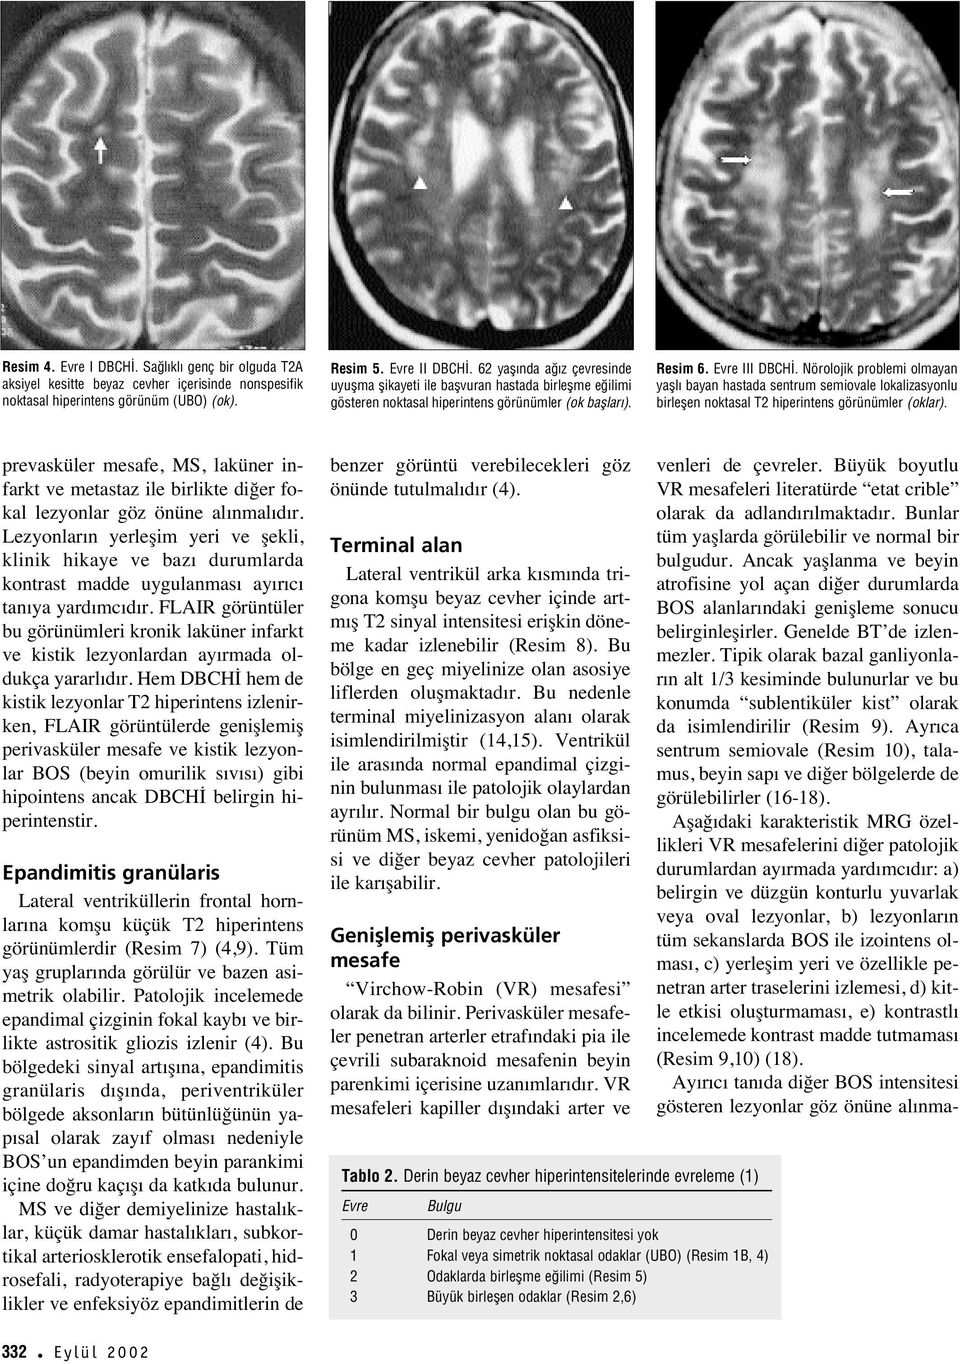 Nörolojik problemi olmayan yafll bayan hastada sentrum semiovale lokalizasyonlu birleflen noktasal T2 hiperintens görünümler (oklar).